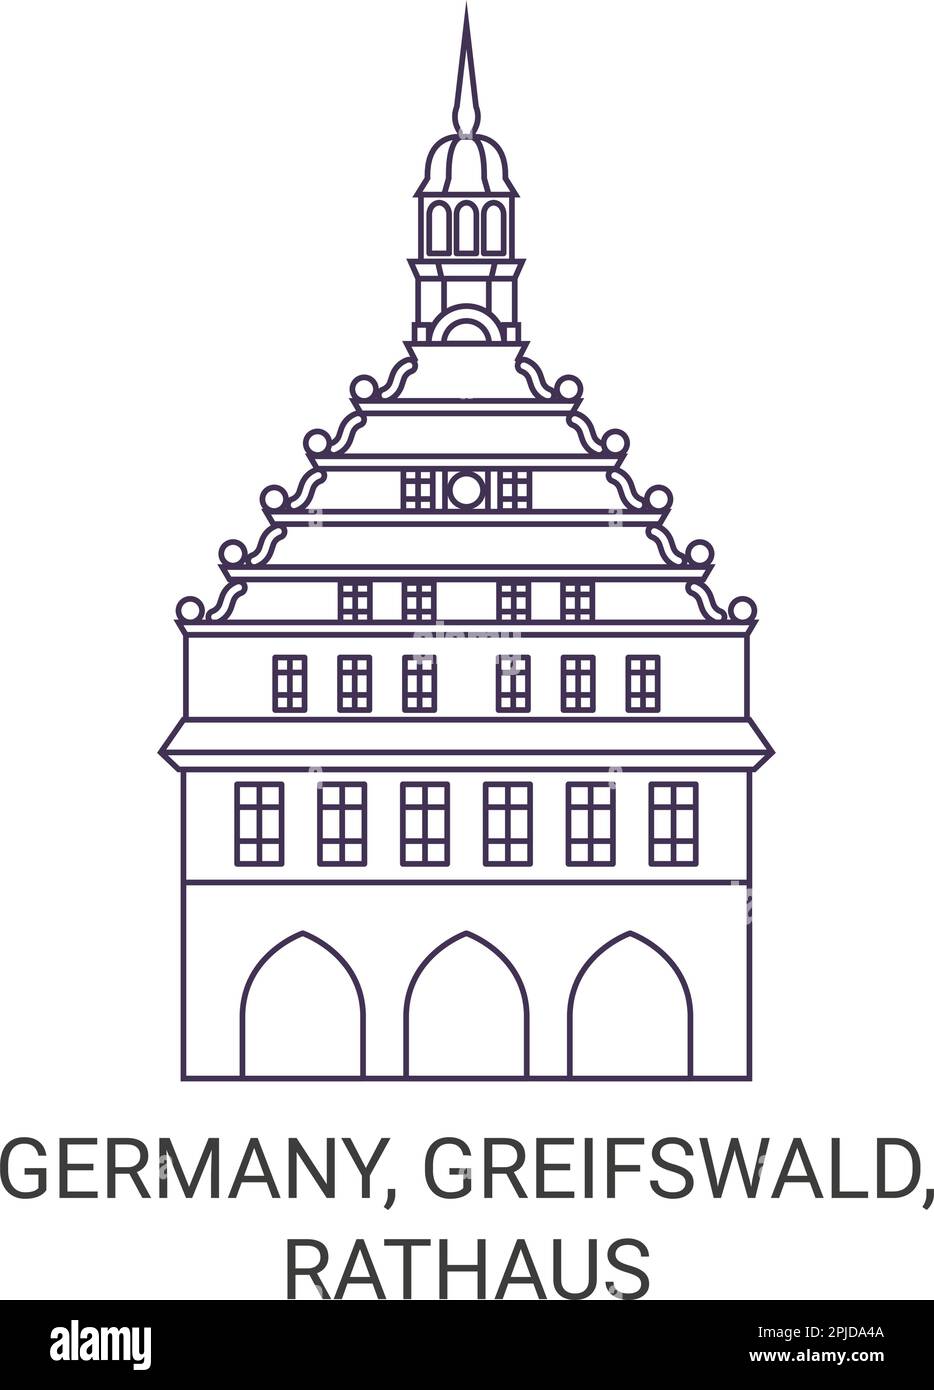 Deutschland, Greifswald, Rathaus Reise-Wahrzeichen-Vektordarstellung Stock Vektor